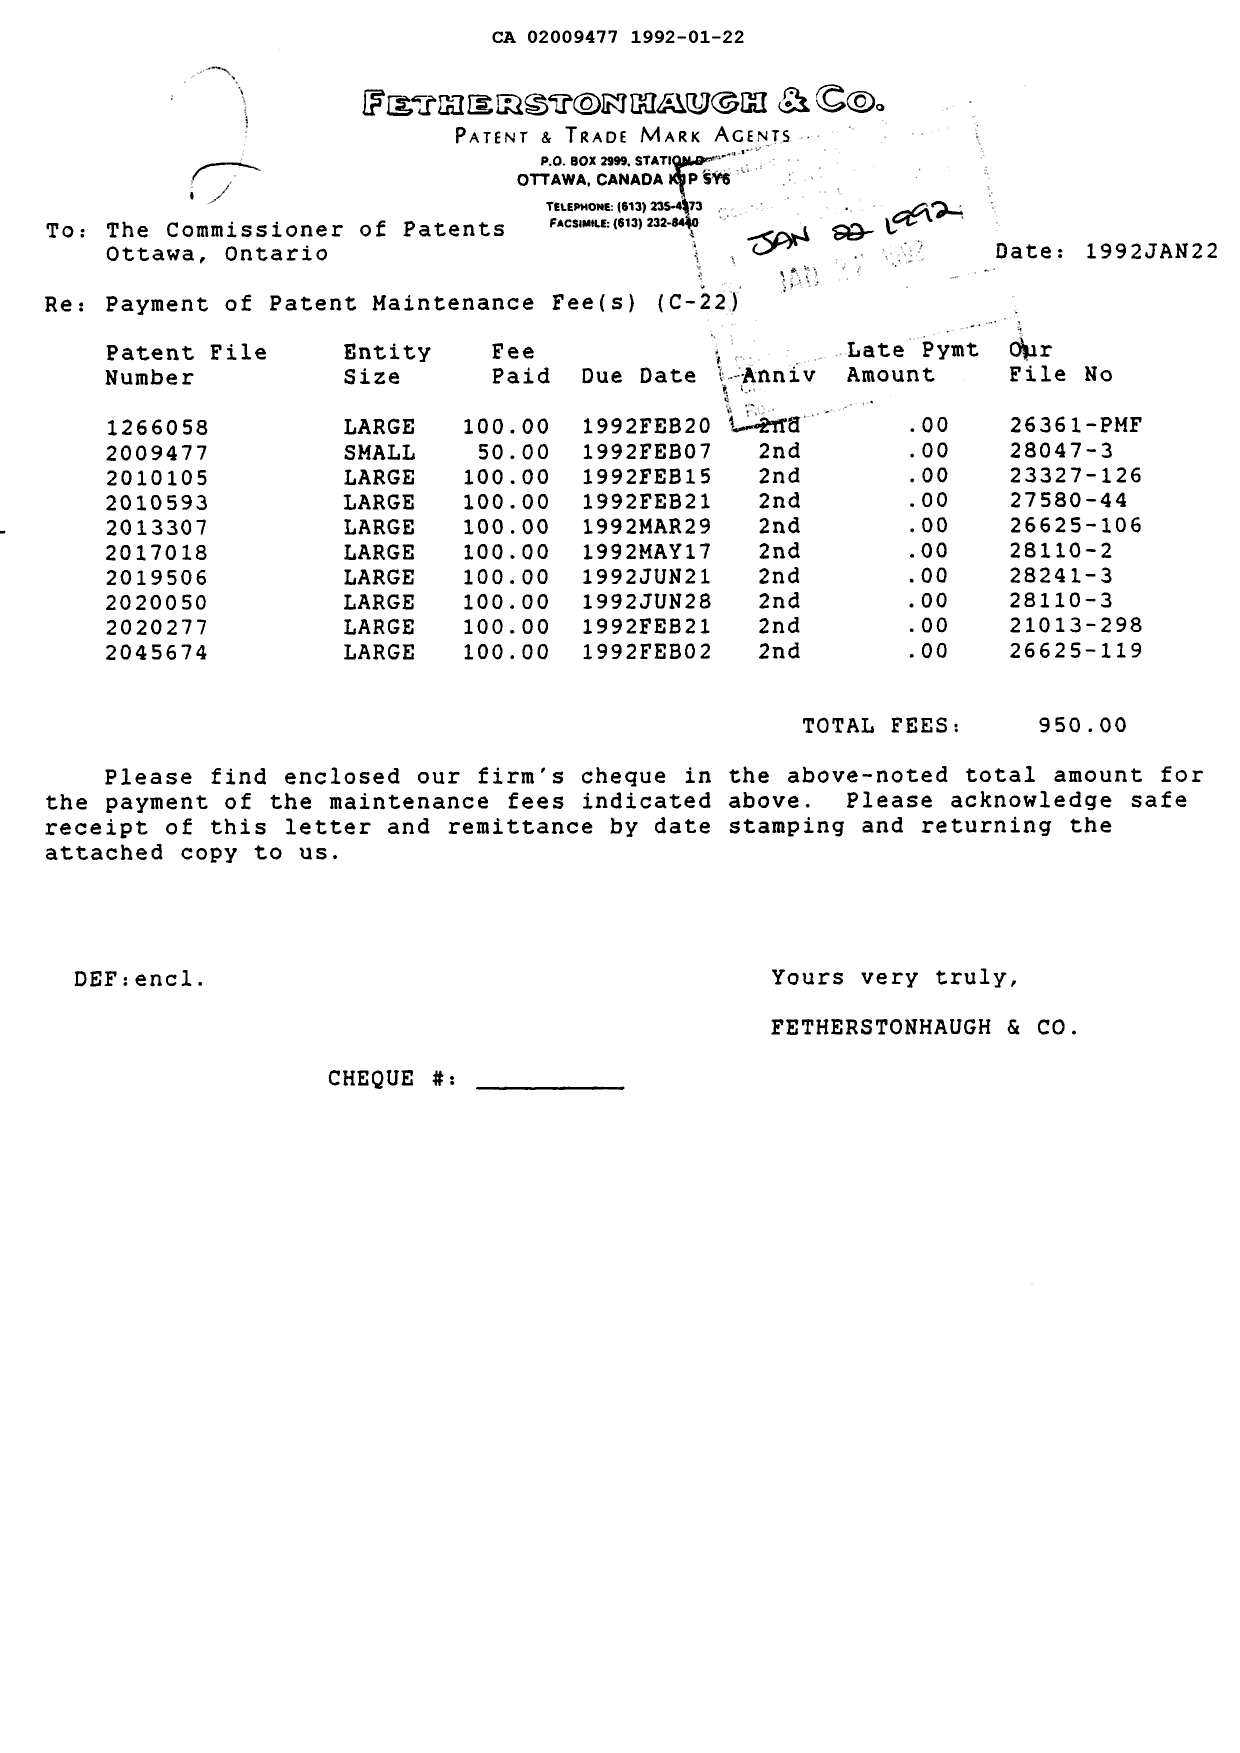 Document de brevet canadien 2009477. Taxes 19911222. Image 1 de 1